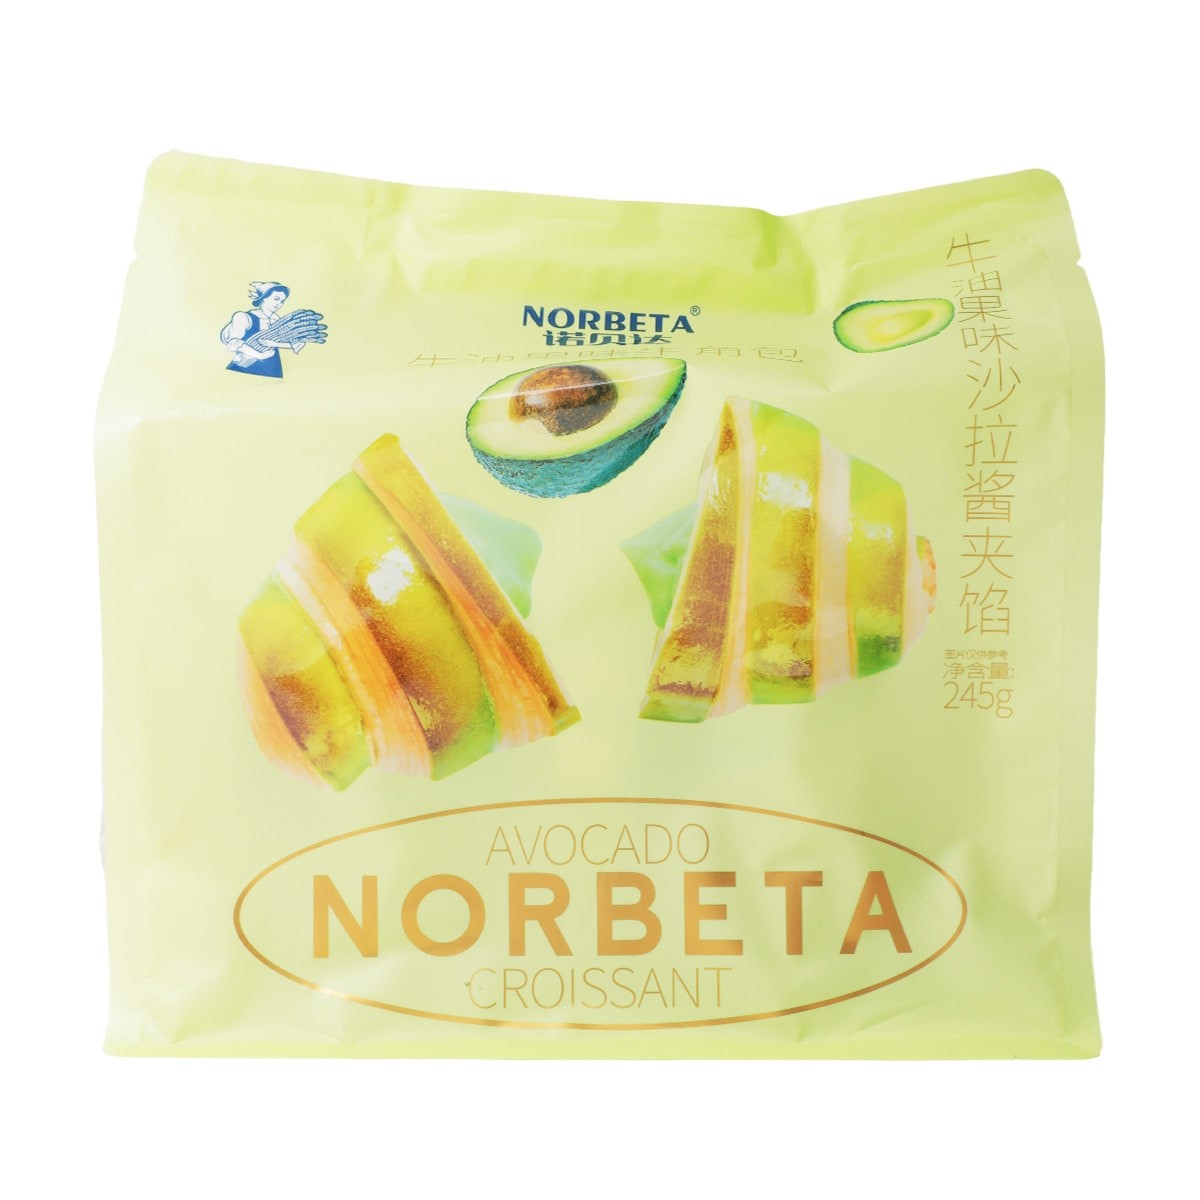 norbeta-croissants-avocado-flavor